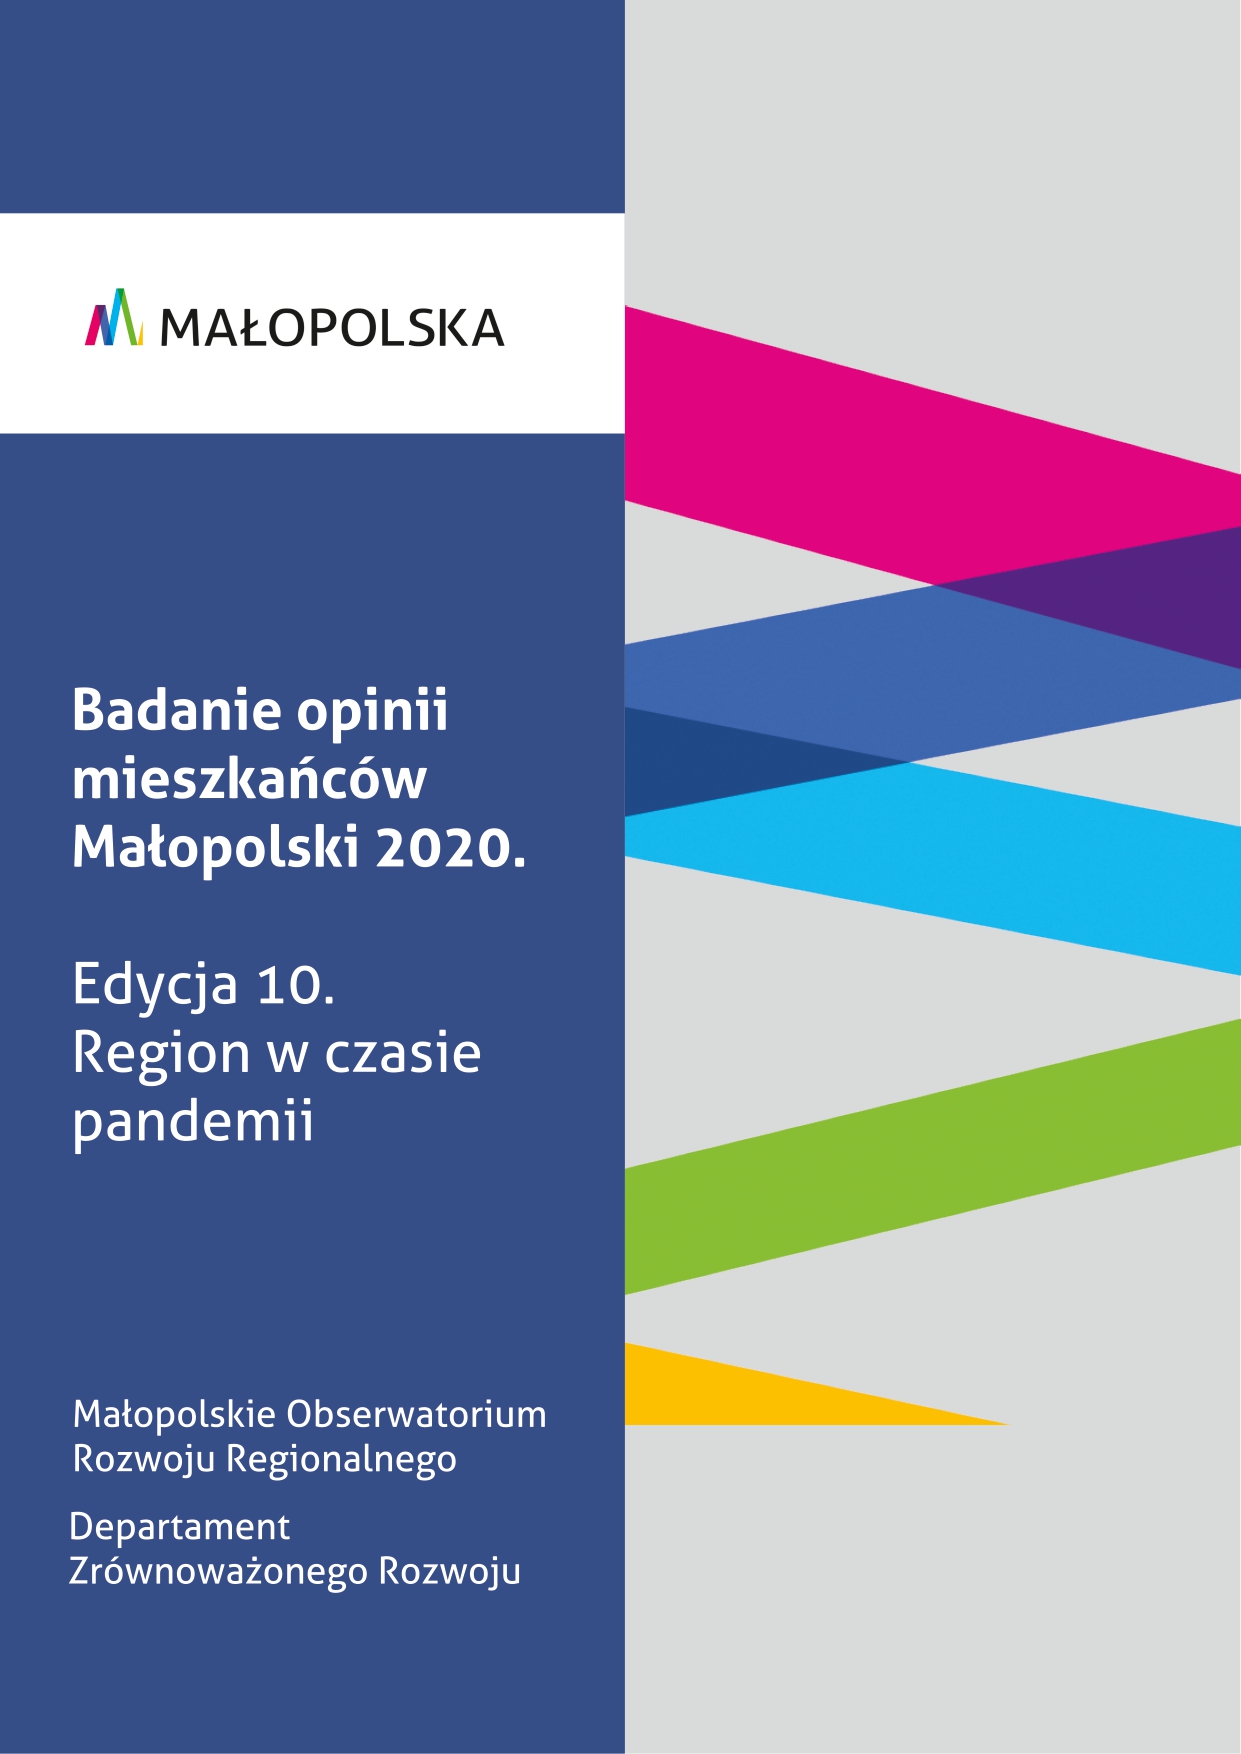 Badanie opinii mieszkańców Małopolski 2020. Region w czasie pandemi.